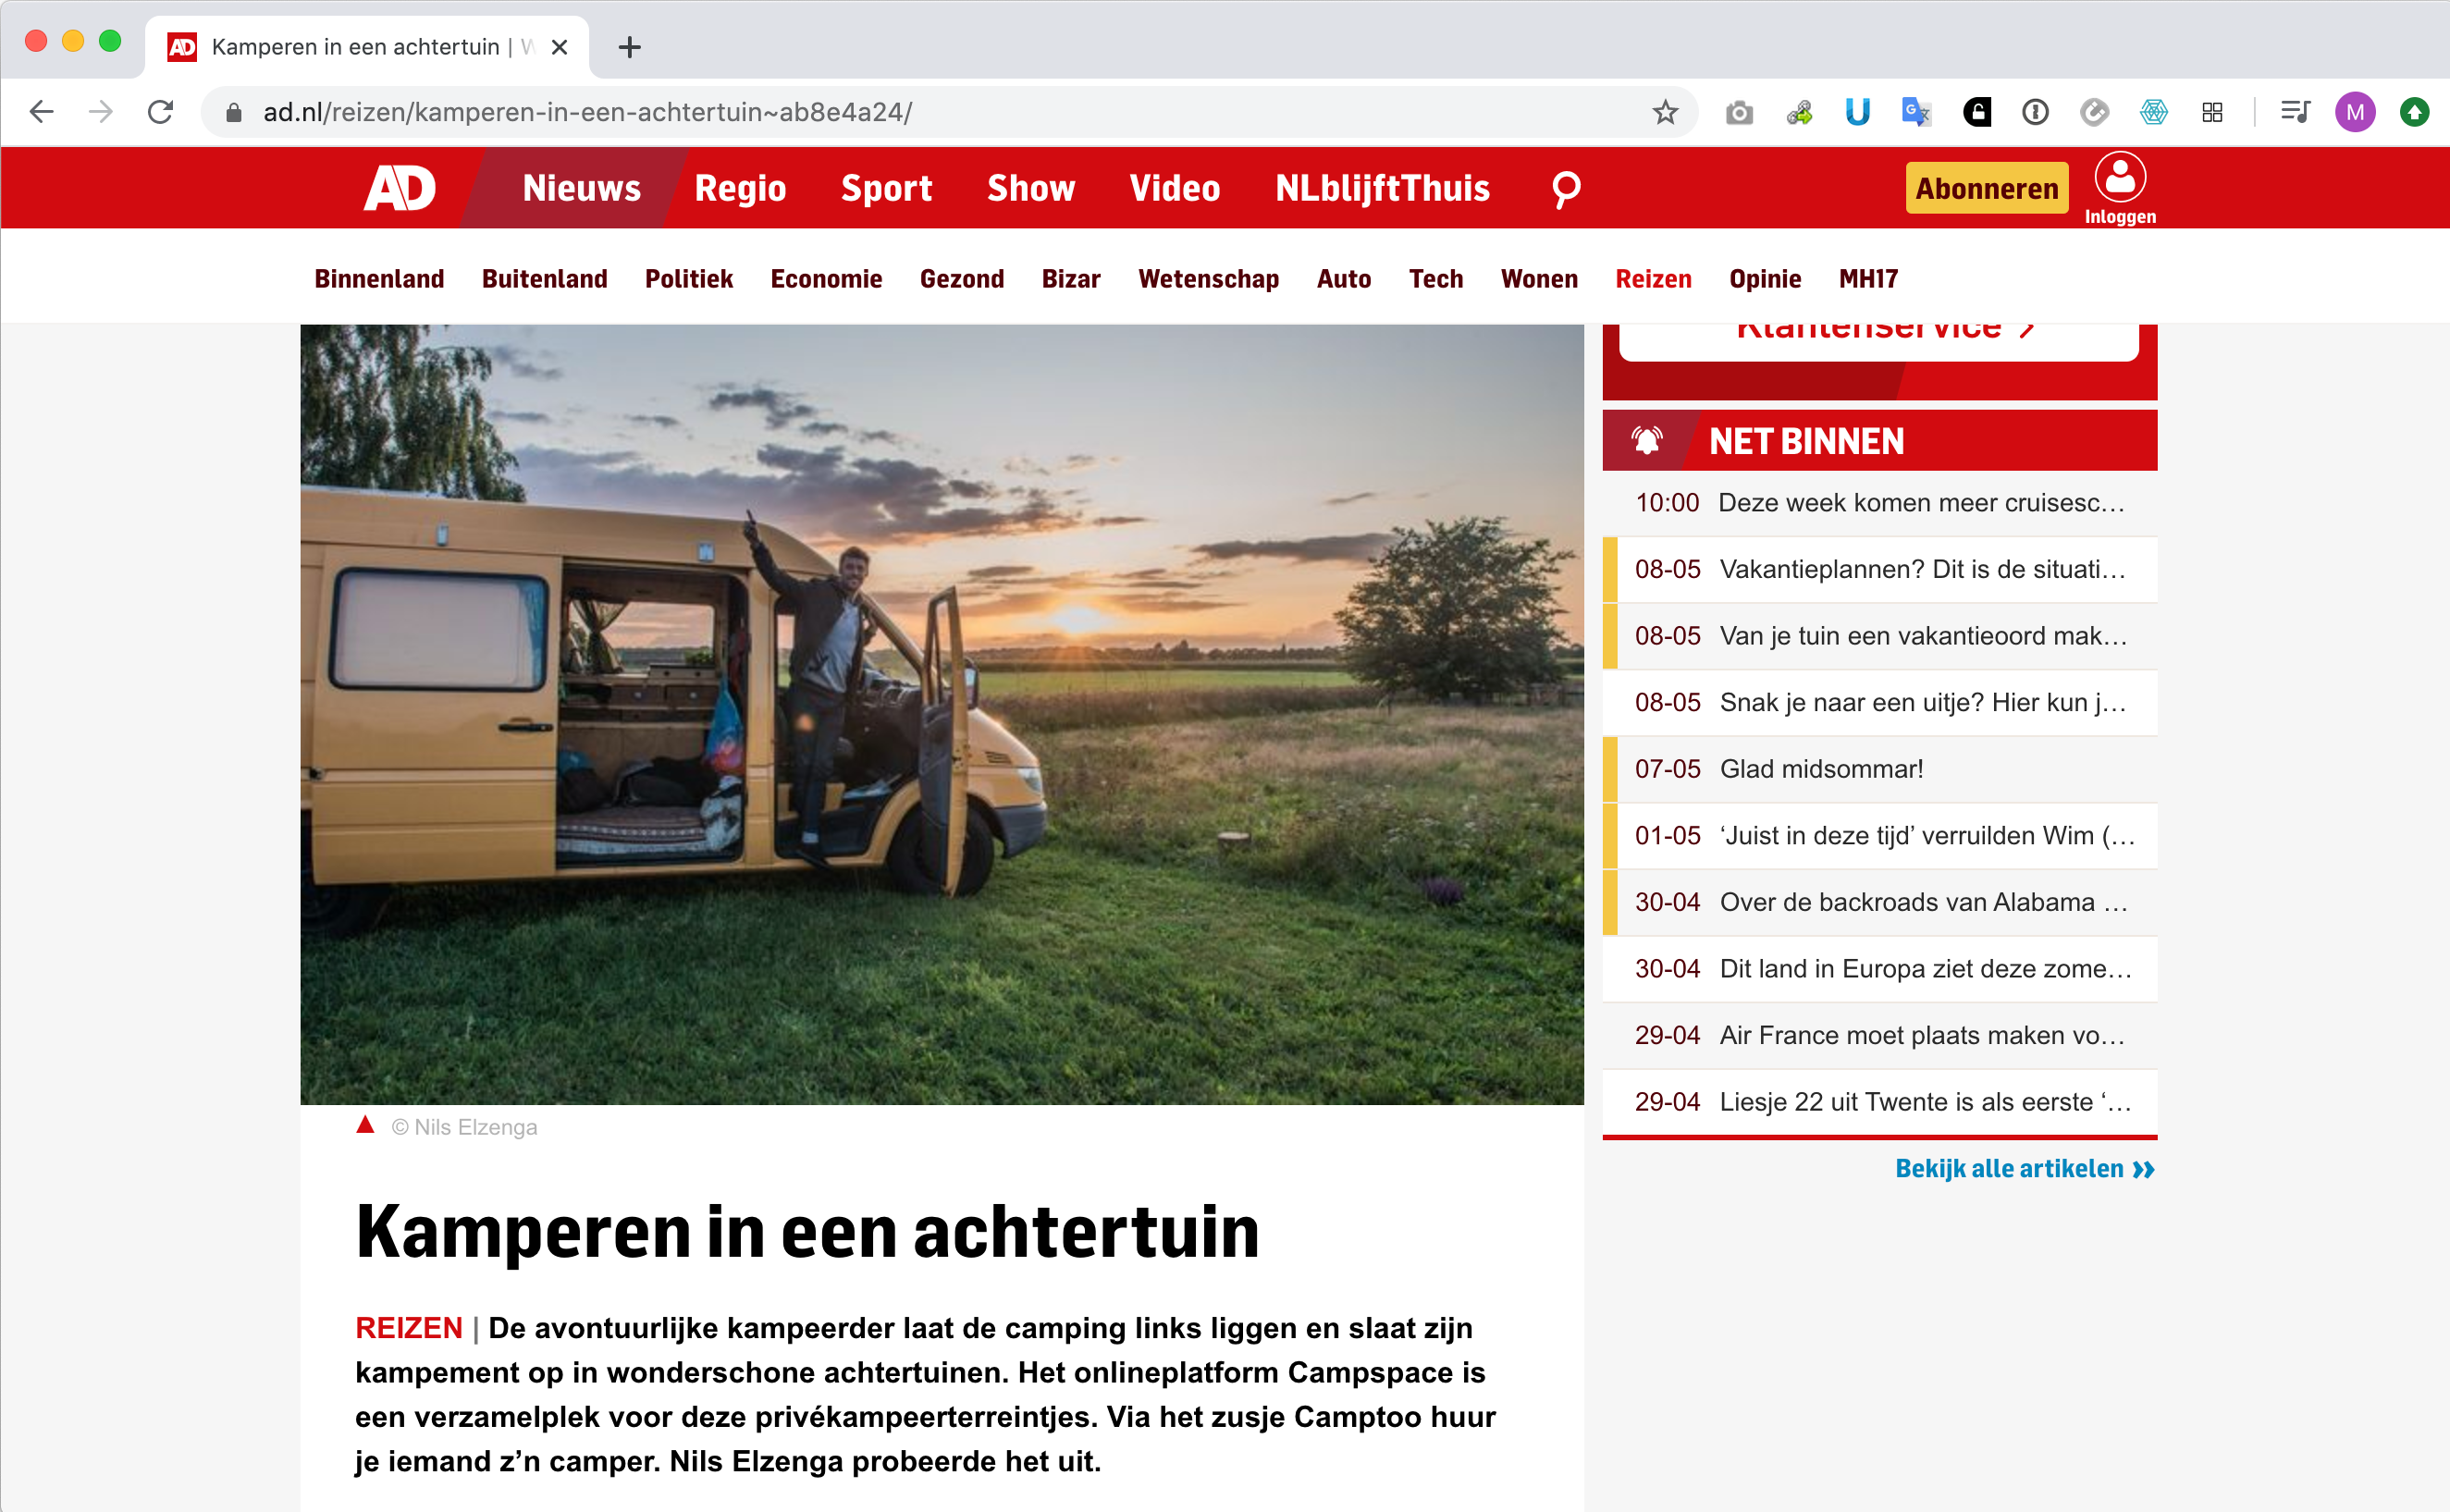 5 Mars 2020 - Le Algemeen Dagblad sur 'le camping dans le jardin'